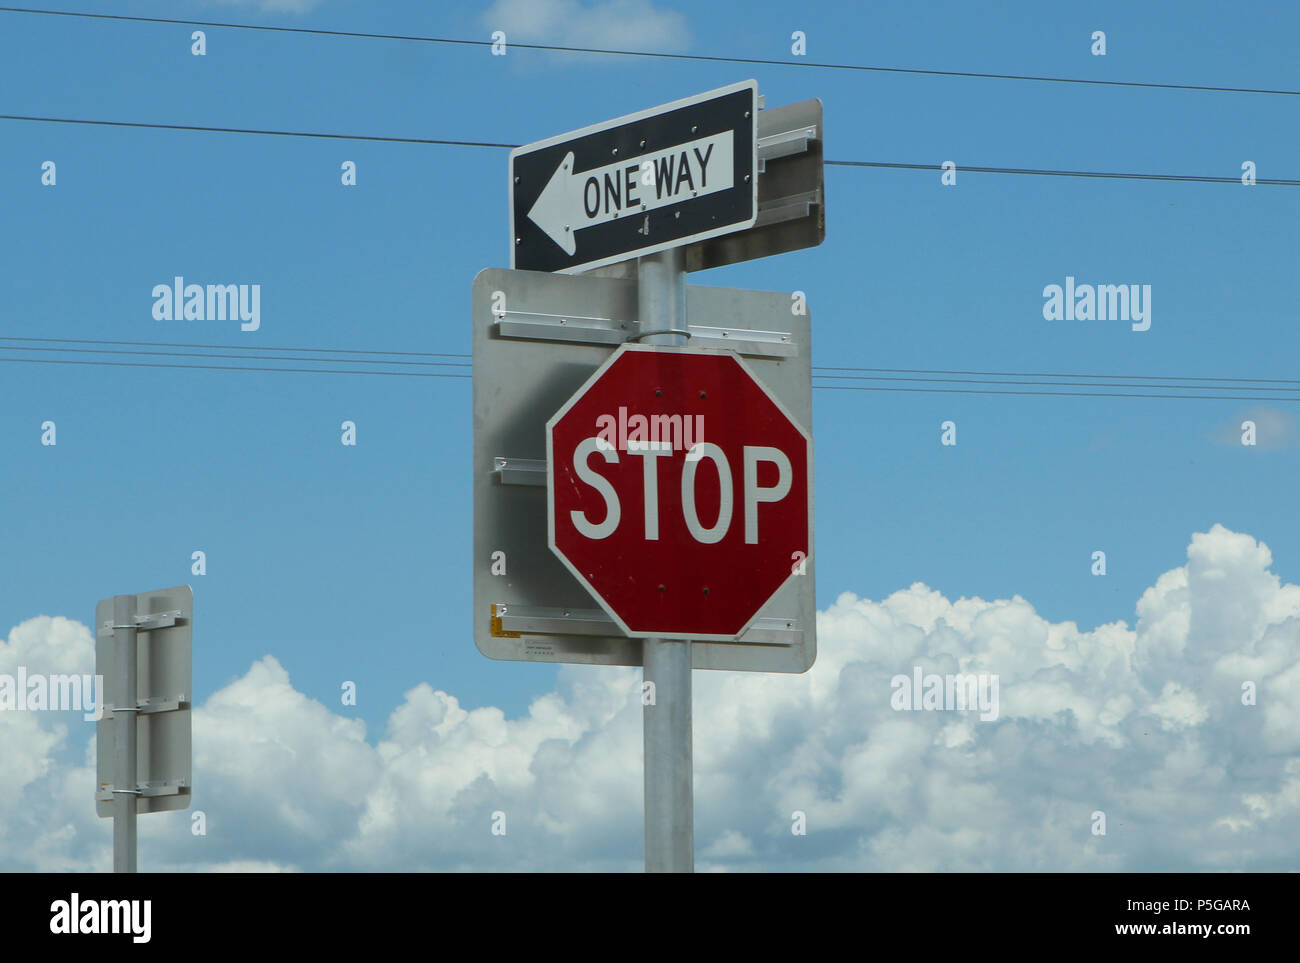 Straßenschilder Stop und One Way an einer Kreuzung, USA. Stock Photo